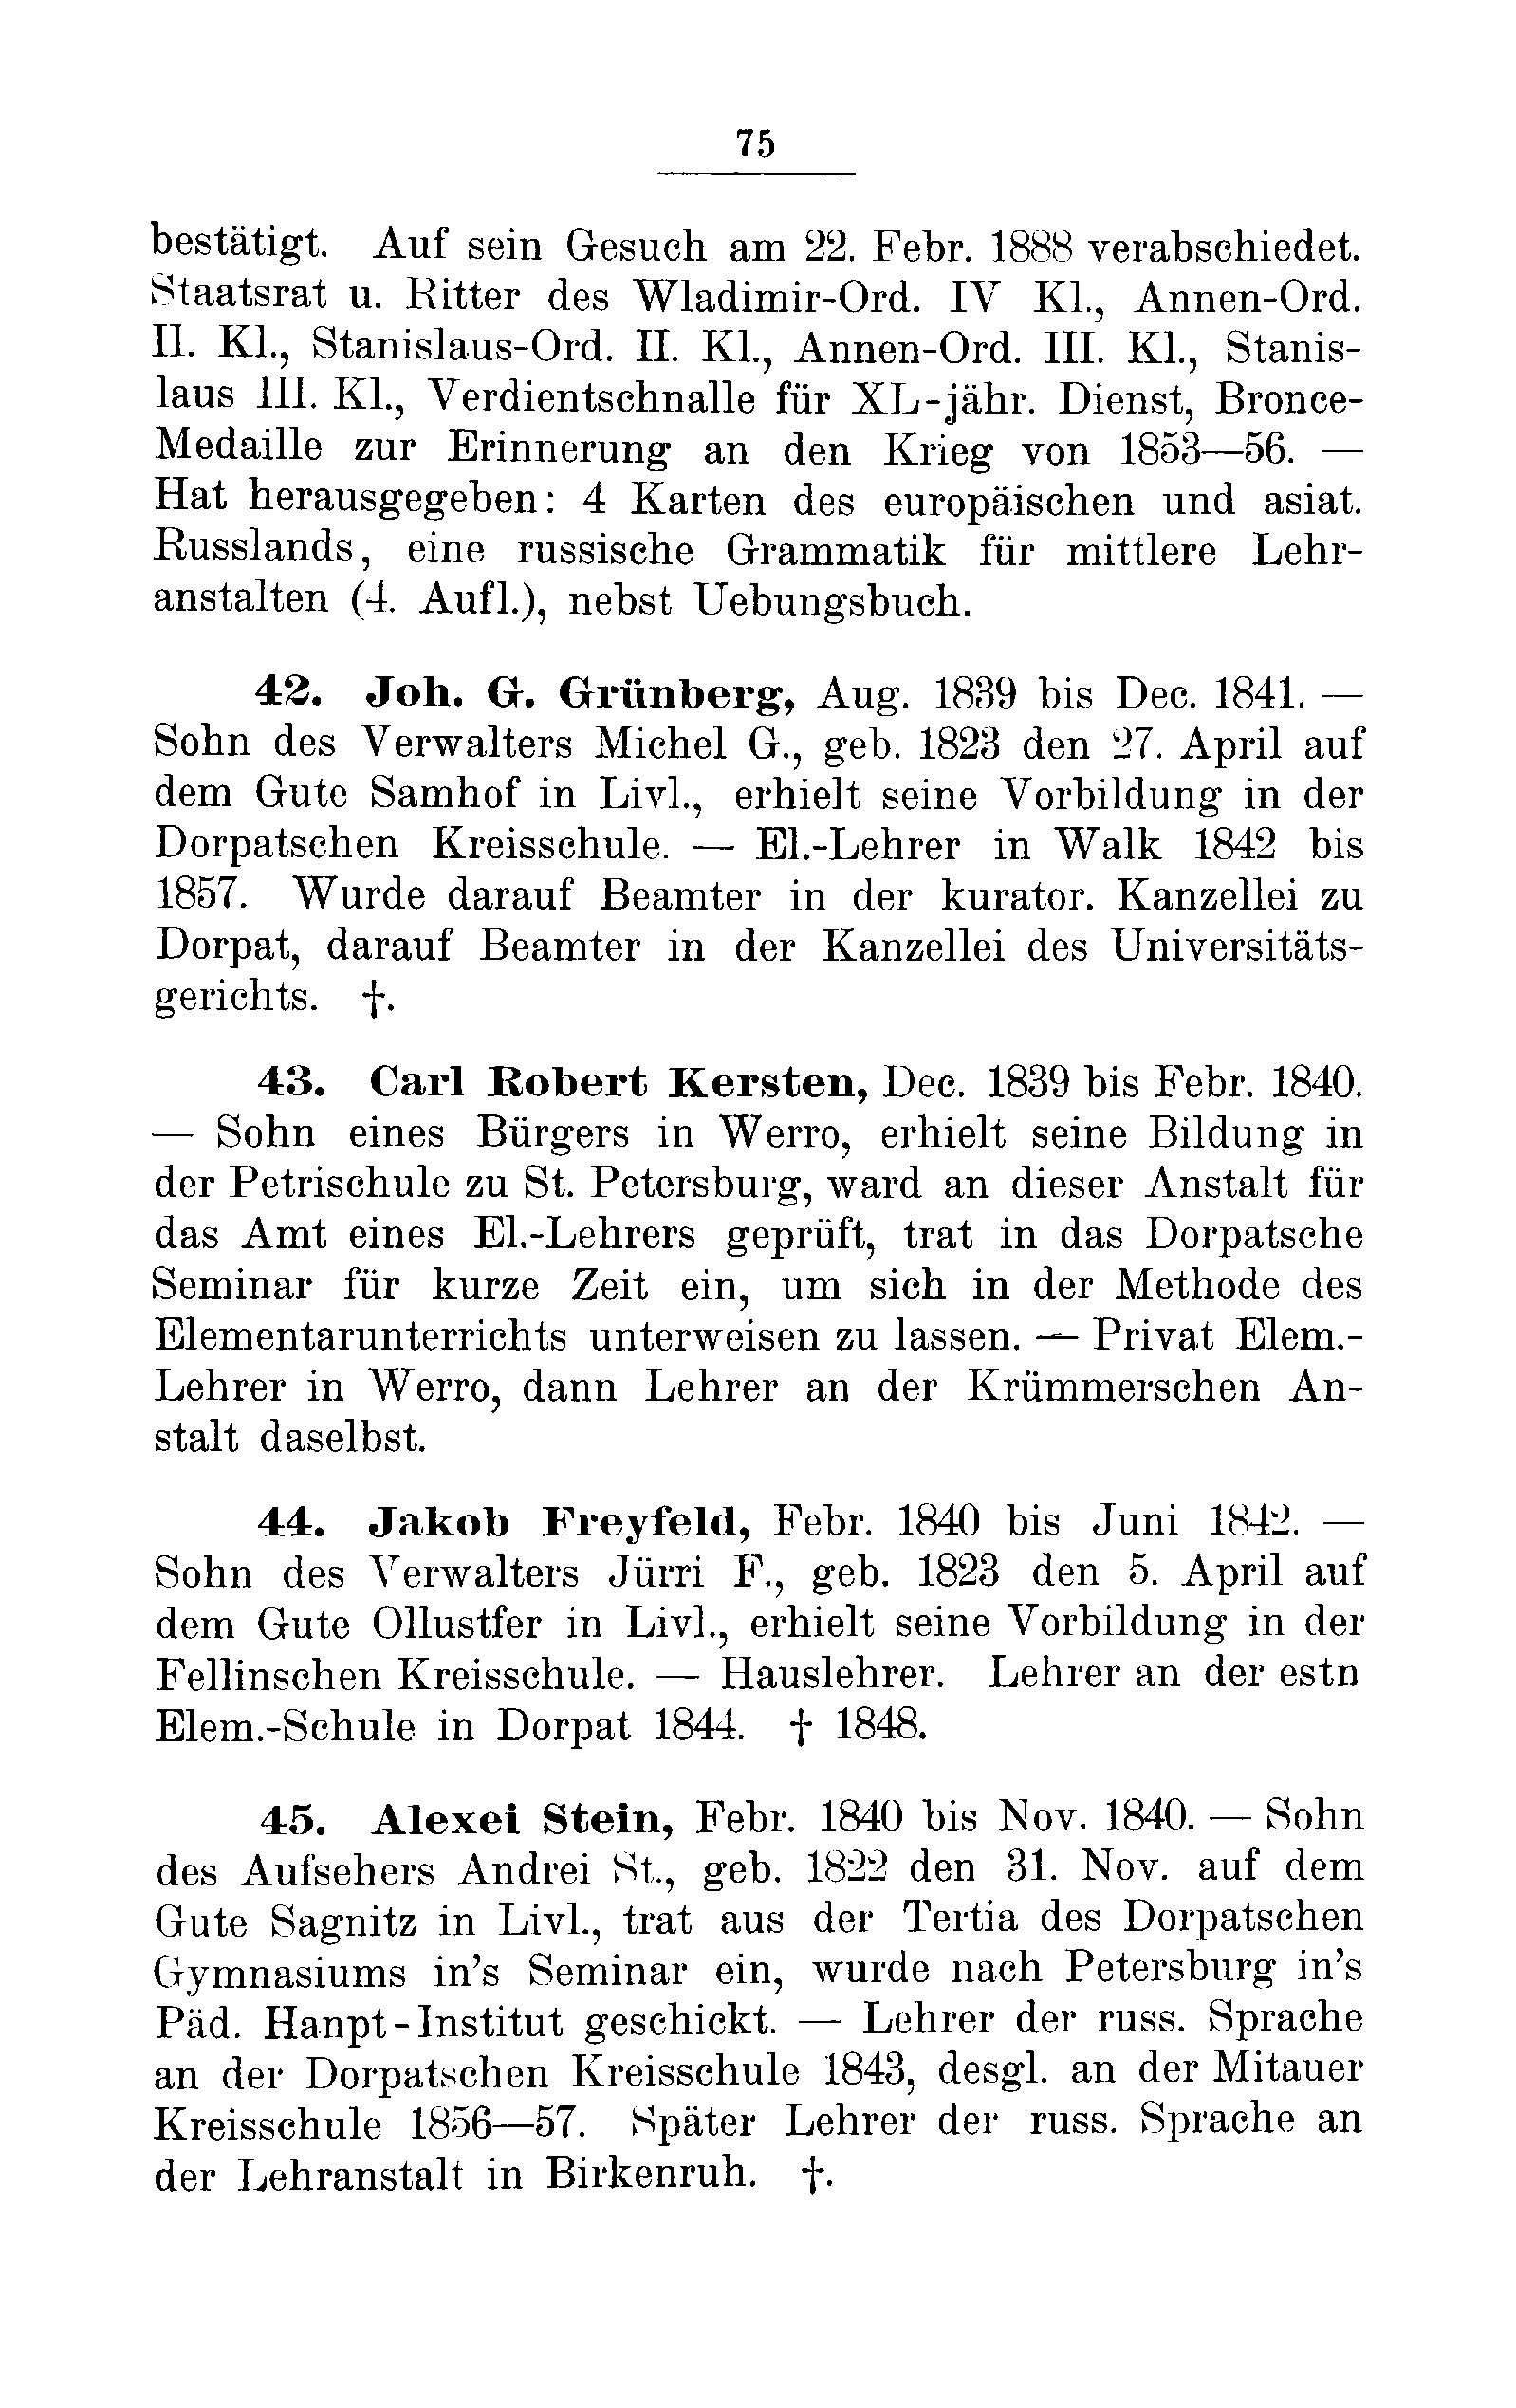 Das Erste Dorpatsche Lehrer-Seminar (1890) | 78. Main body of text